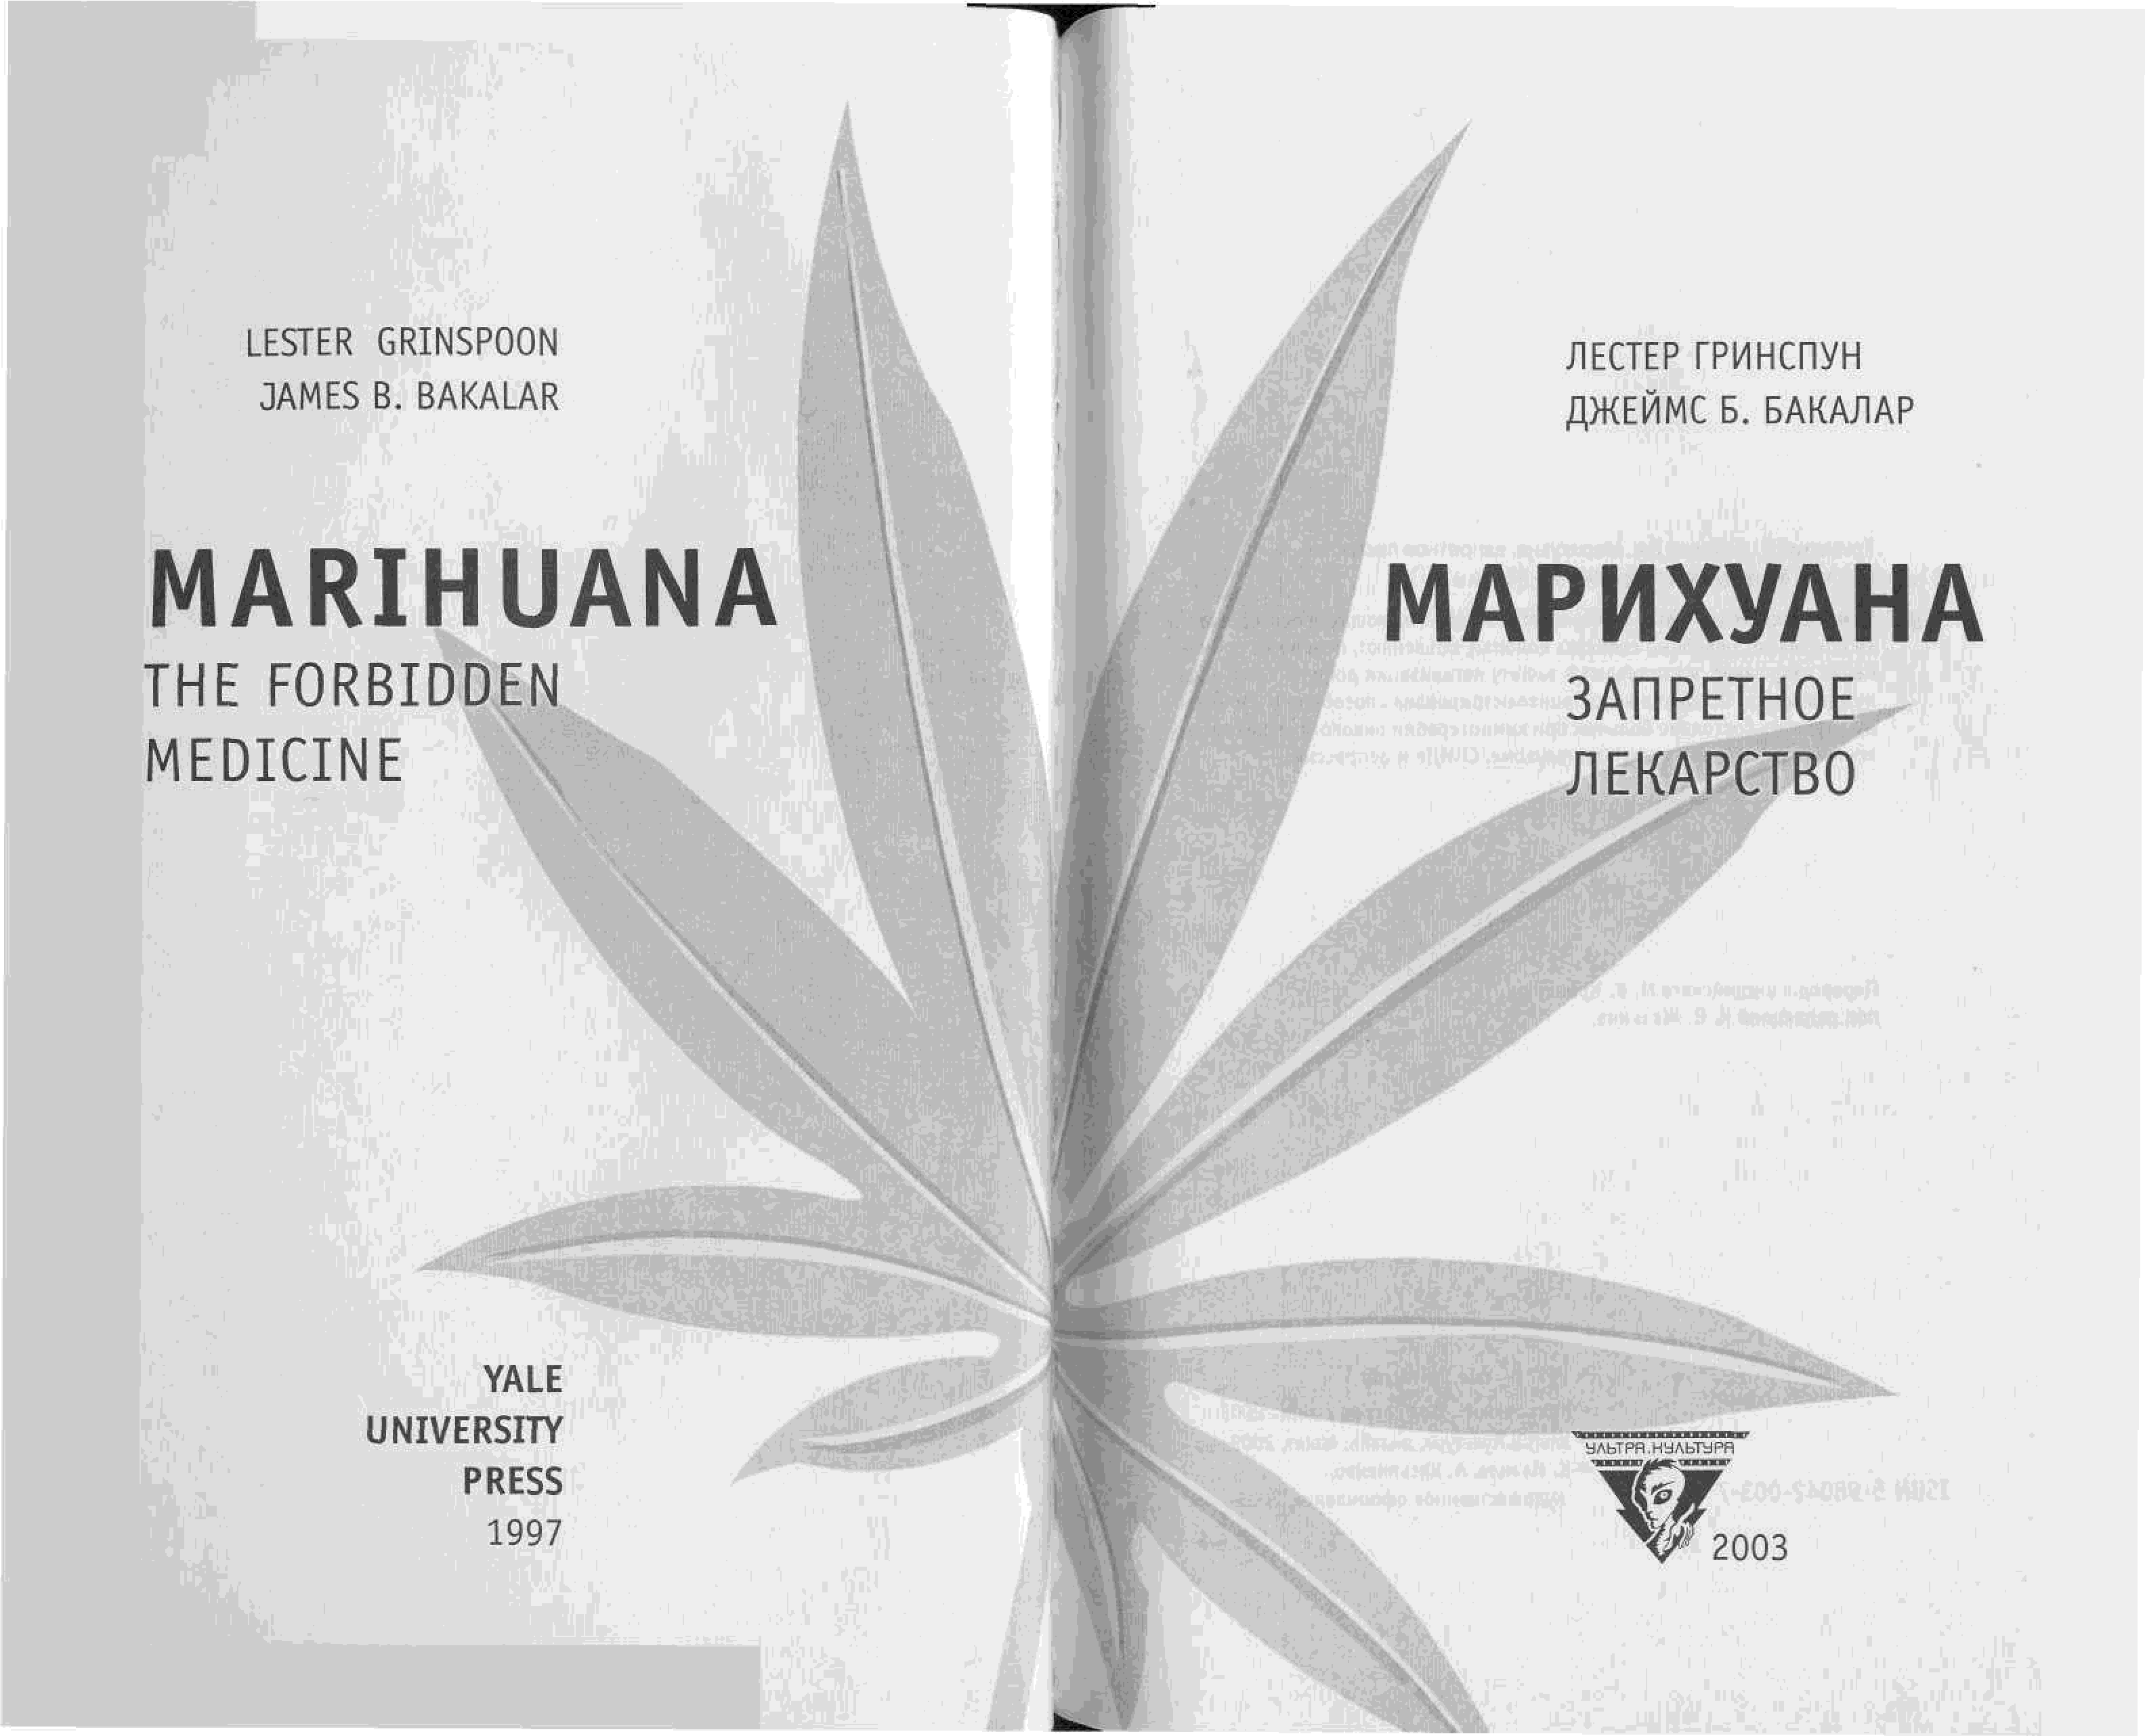 Скачать книги о марихуане по наркотикам федеральная служба